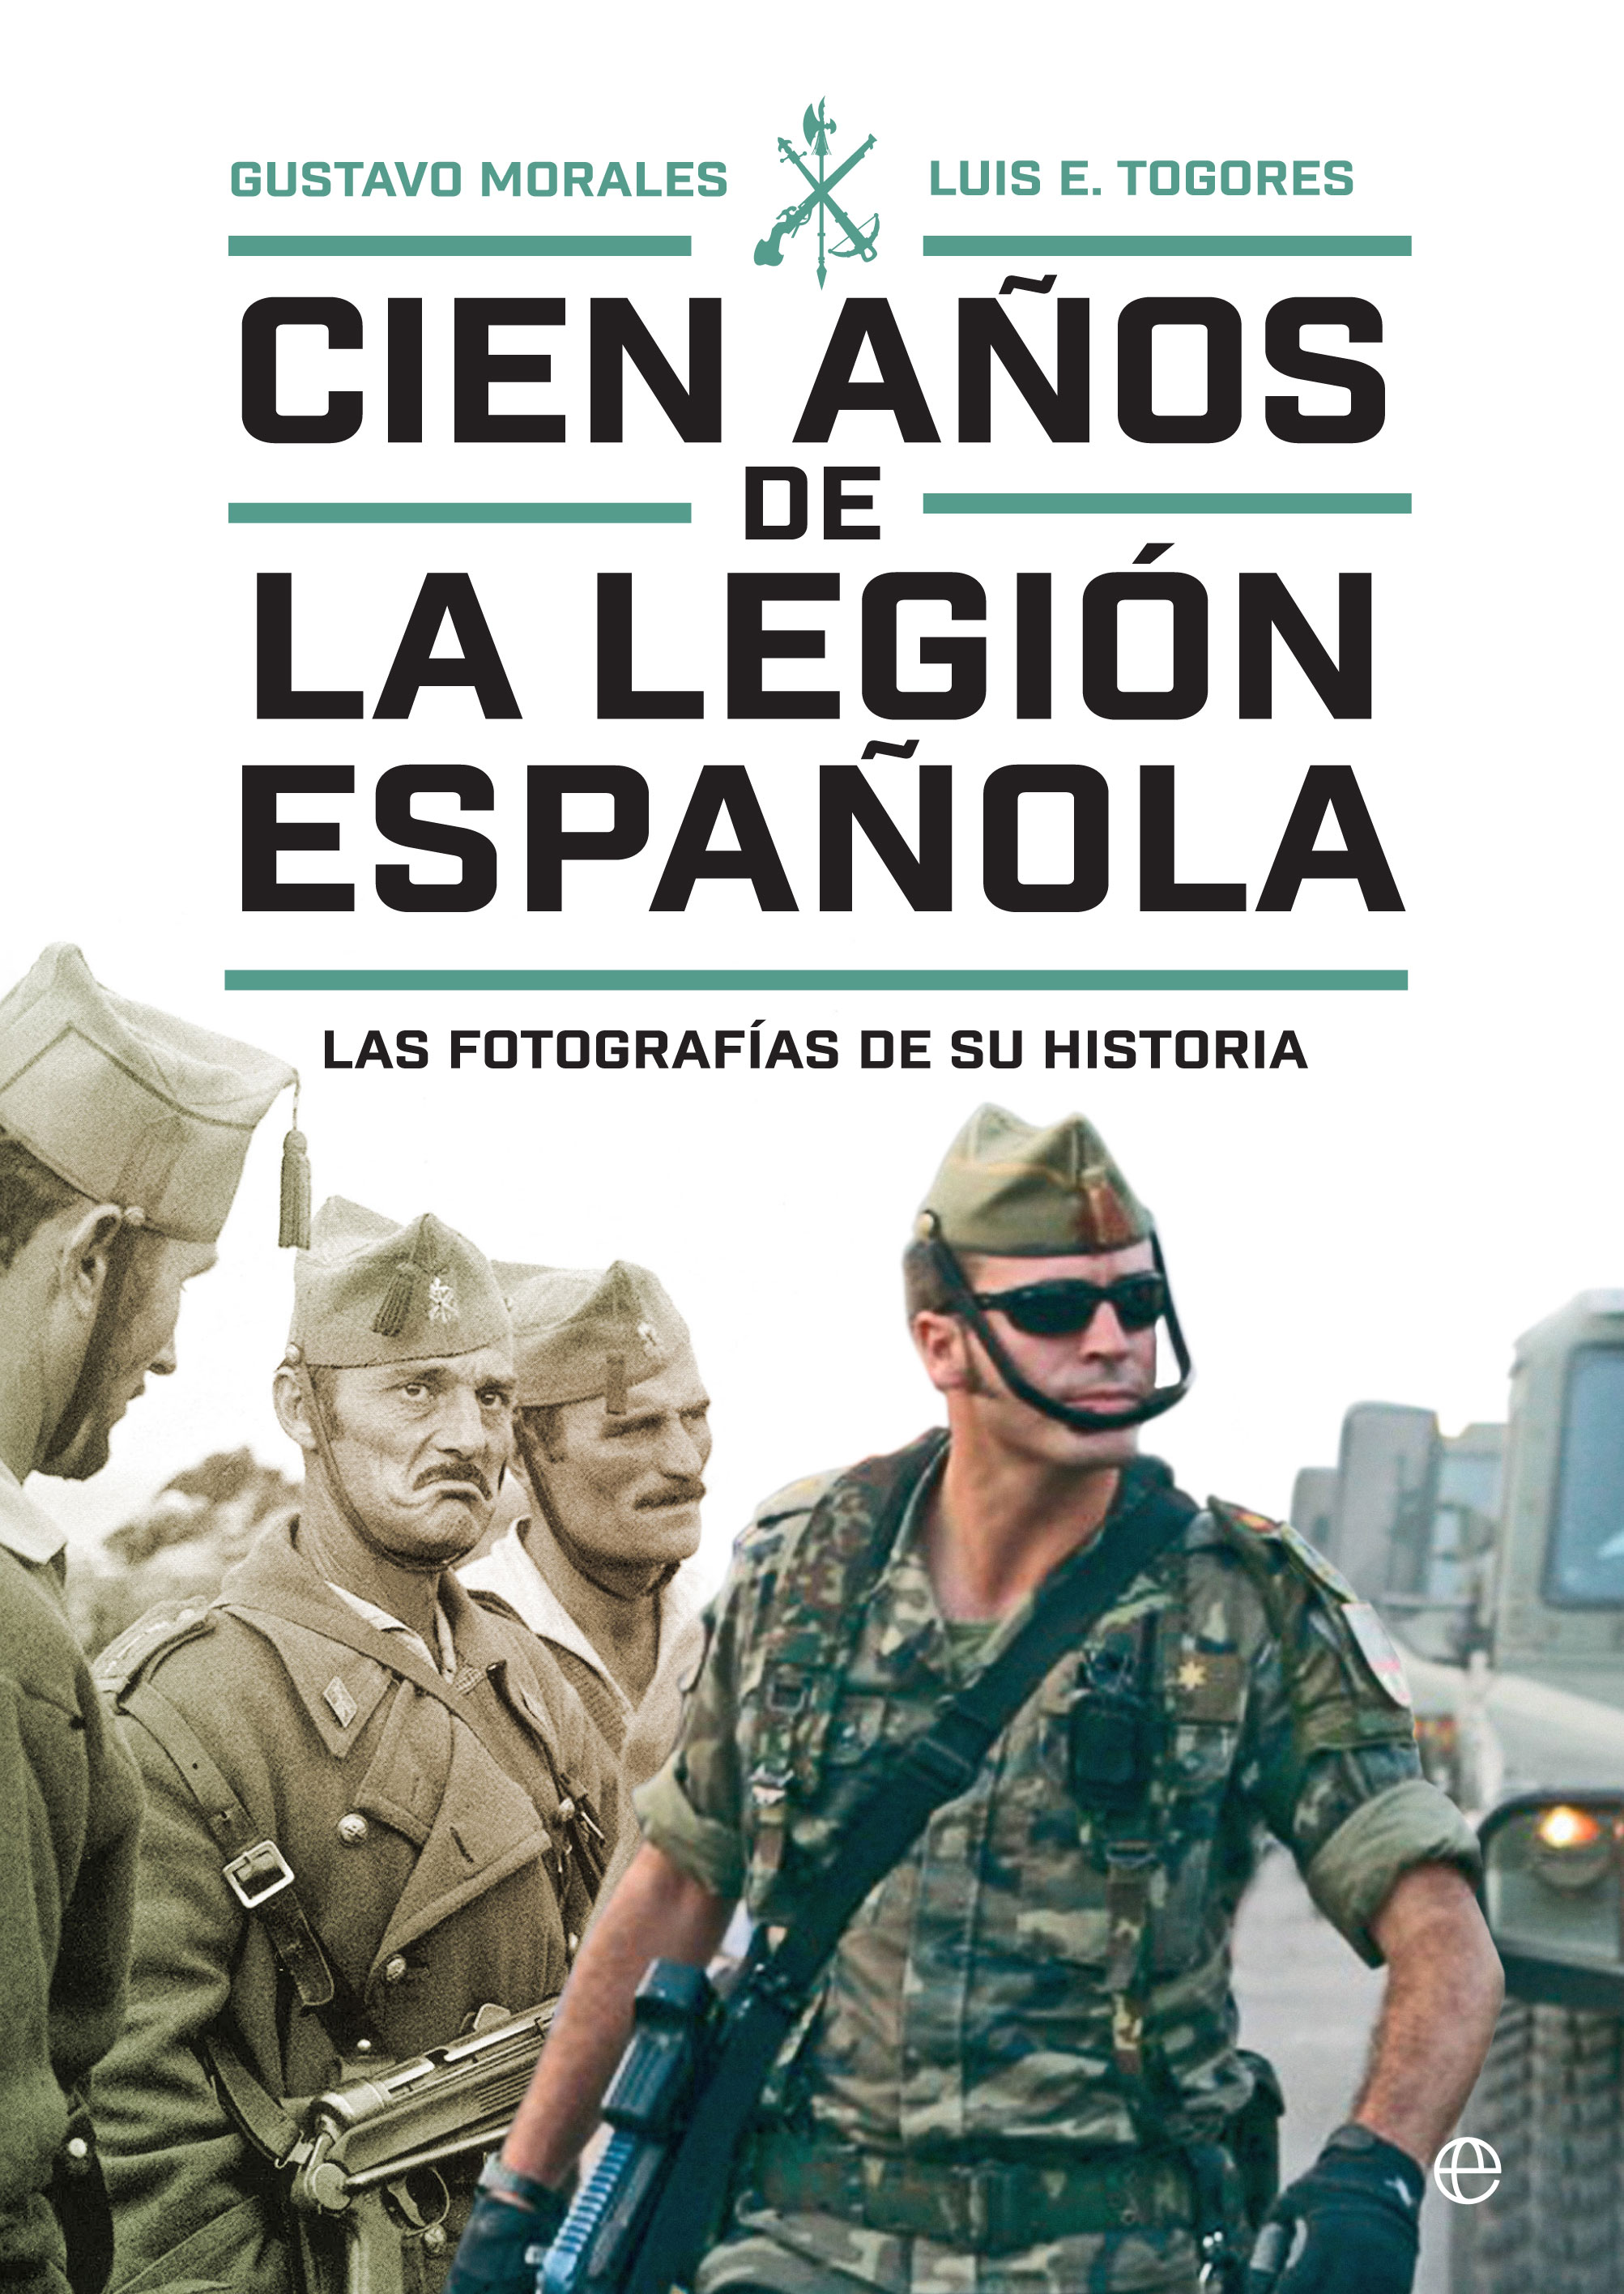 Cien años de la Legión española, de Gustavo Morales y Luis E. Togores